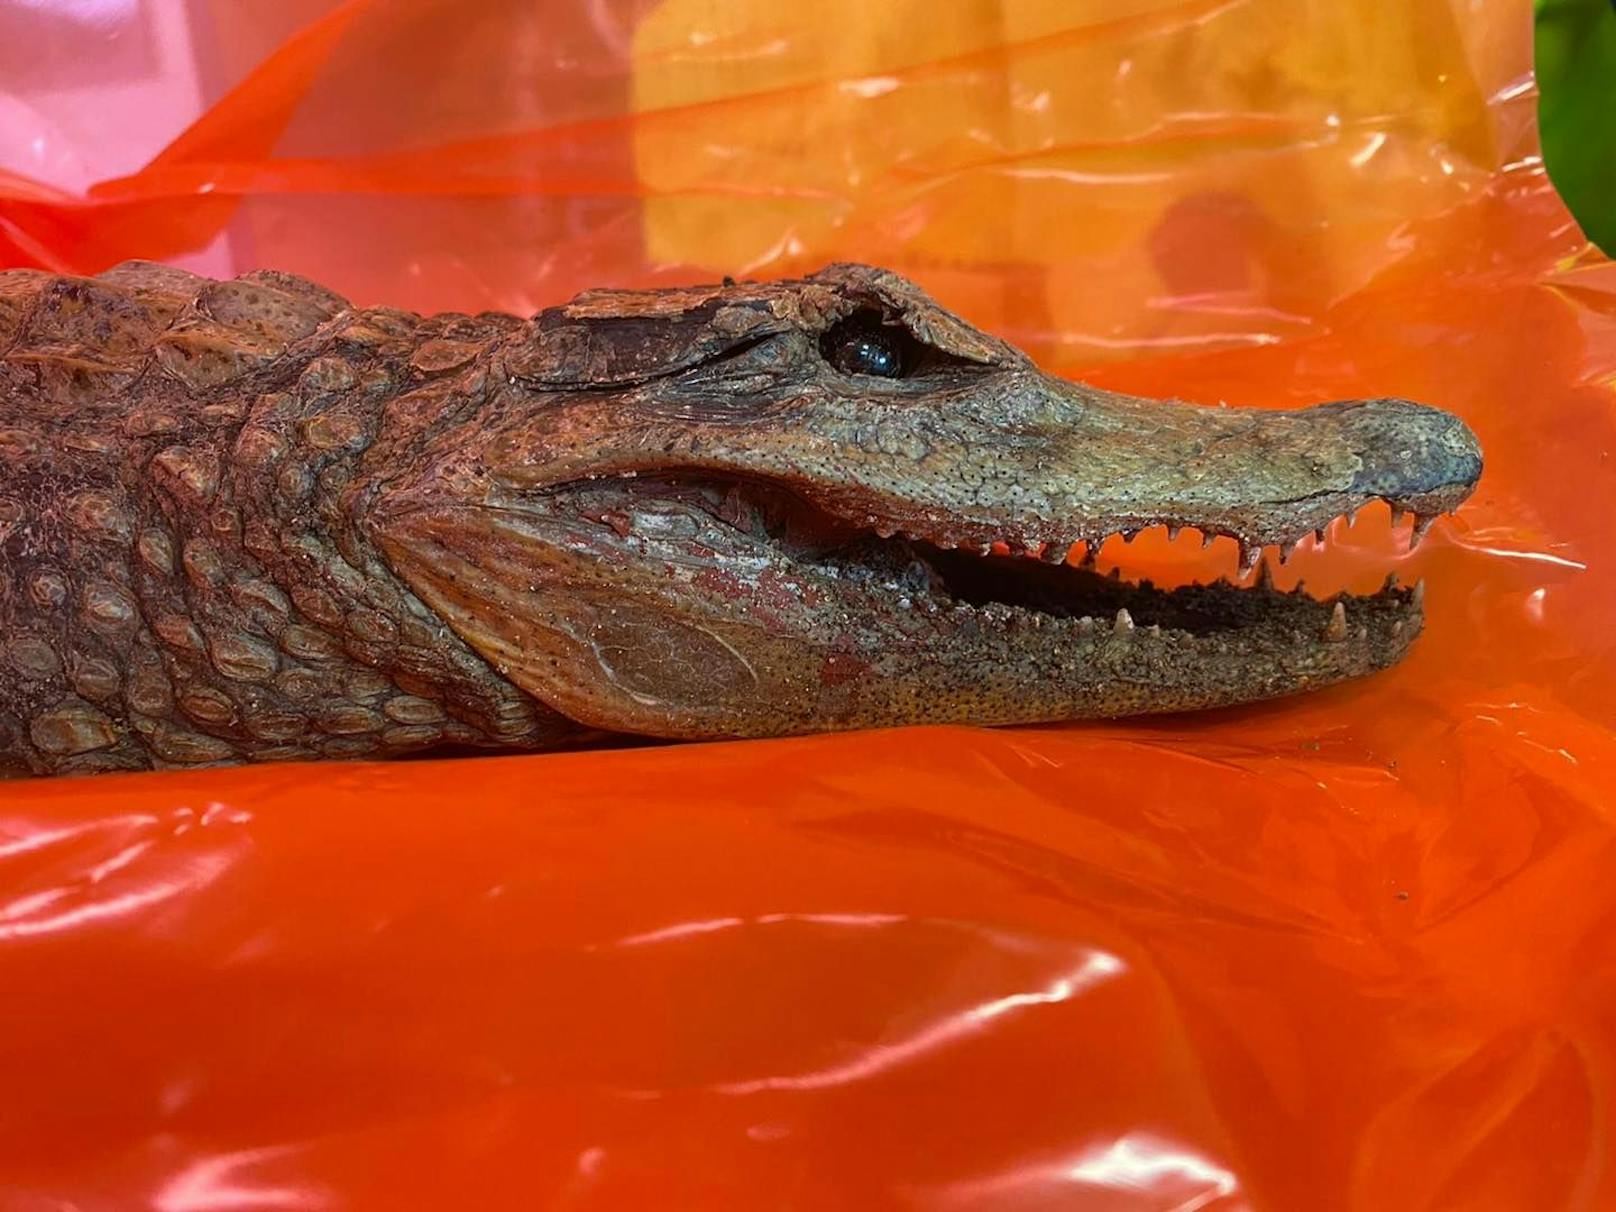 Interessanter Fund: In Baden-Württenberg wurde ein ausgestopftes Krokodil gefunden. 